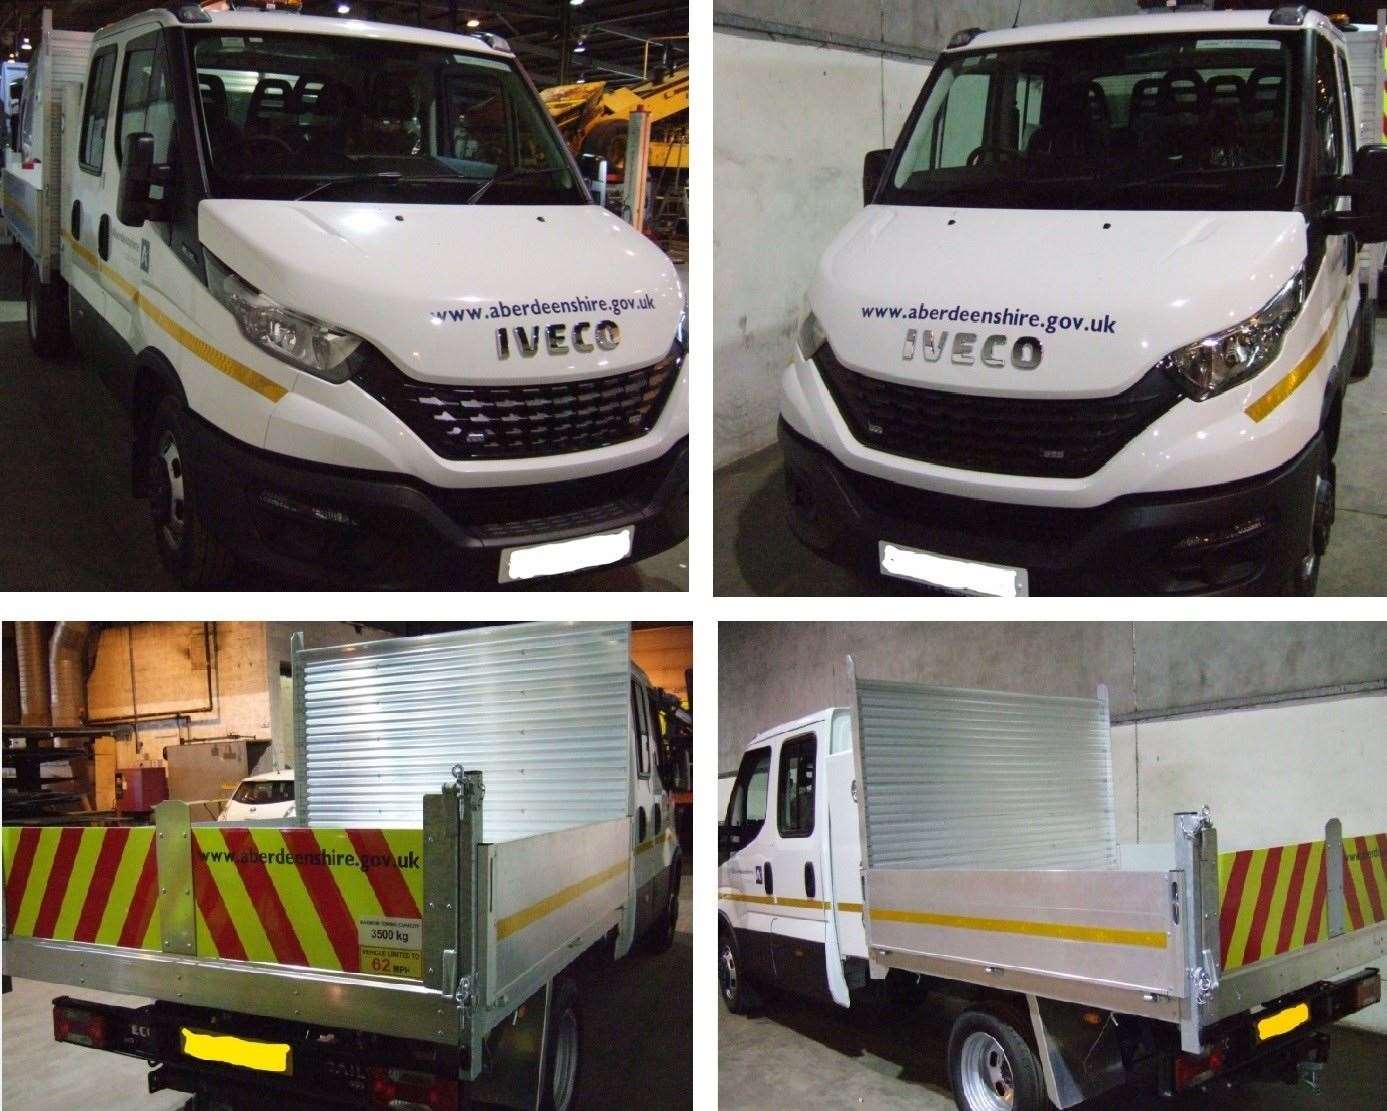 Aberdeenshire Council vehicles and equipment were stolen.